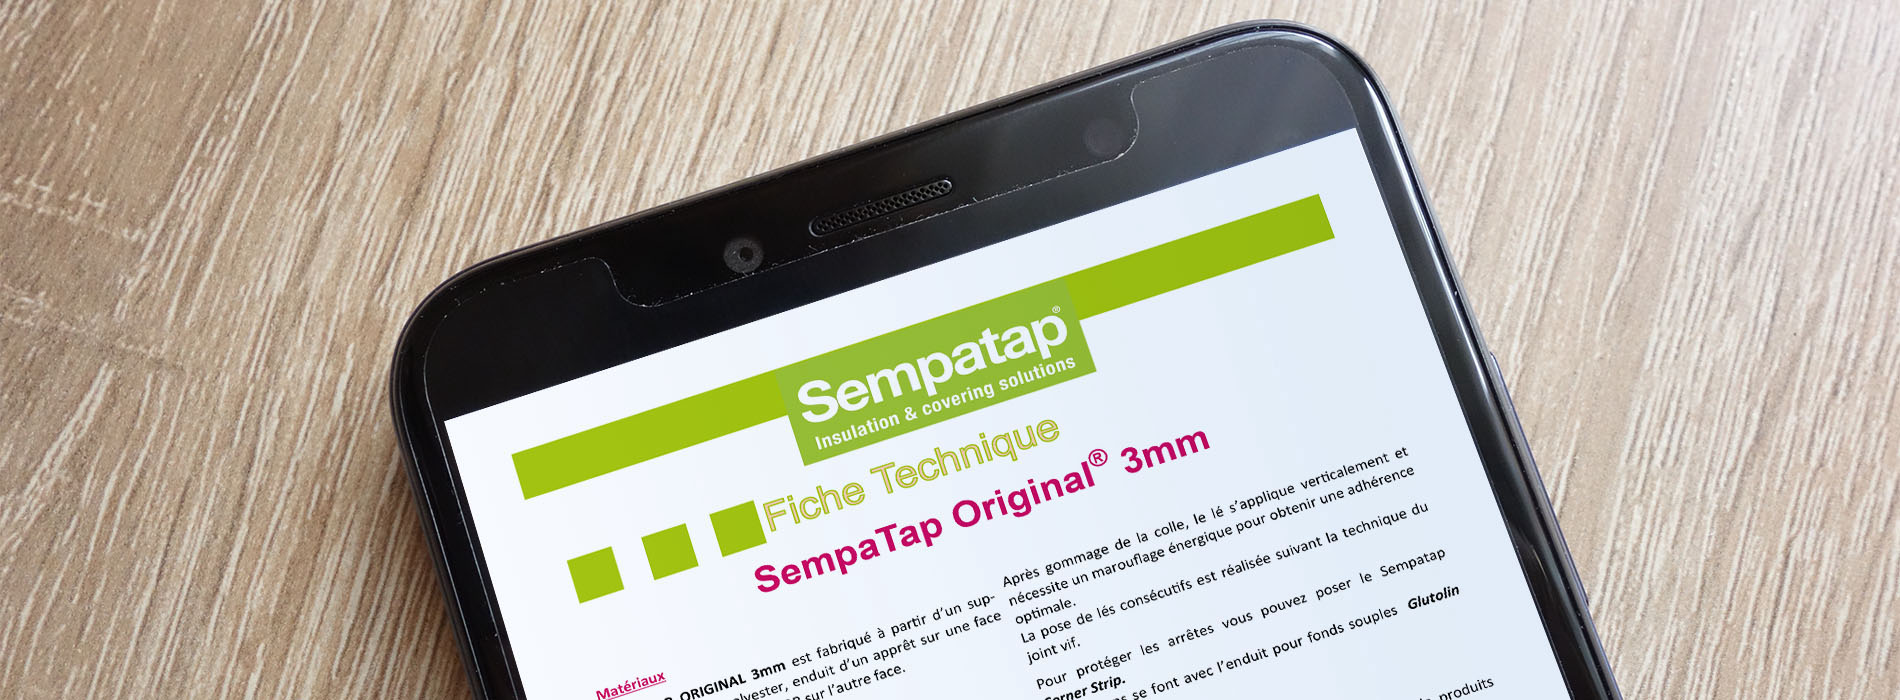 Pour en savoir plus sur les produits Sempatap, demandez votre documentation et recevez nos guides de pose et fiches techniques.